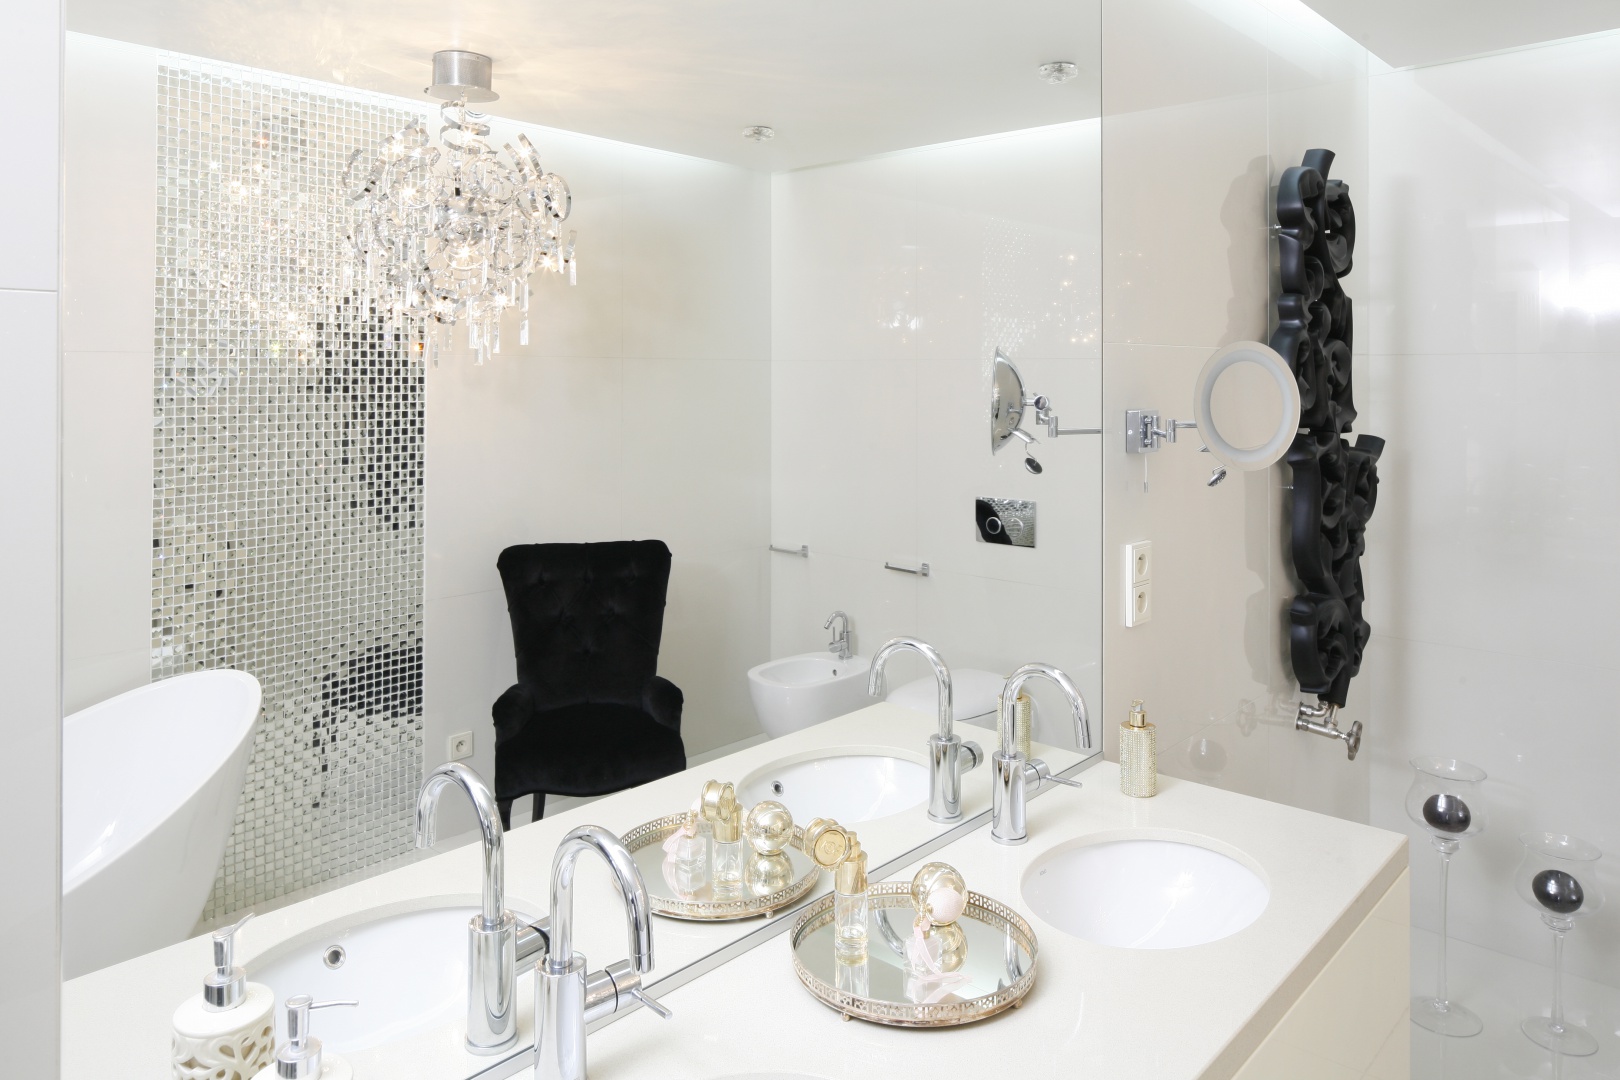 Piękna, bardzo elegancka biała łazienka, w której wzrok przyciągają kontrastujące czarne detale. Projekt: Katarzyna Uszok. Fot. Bartosz Jarosz